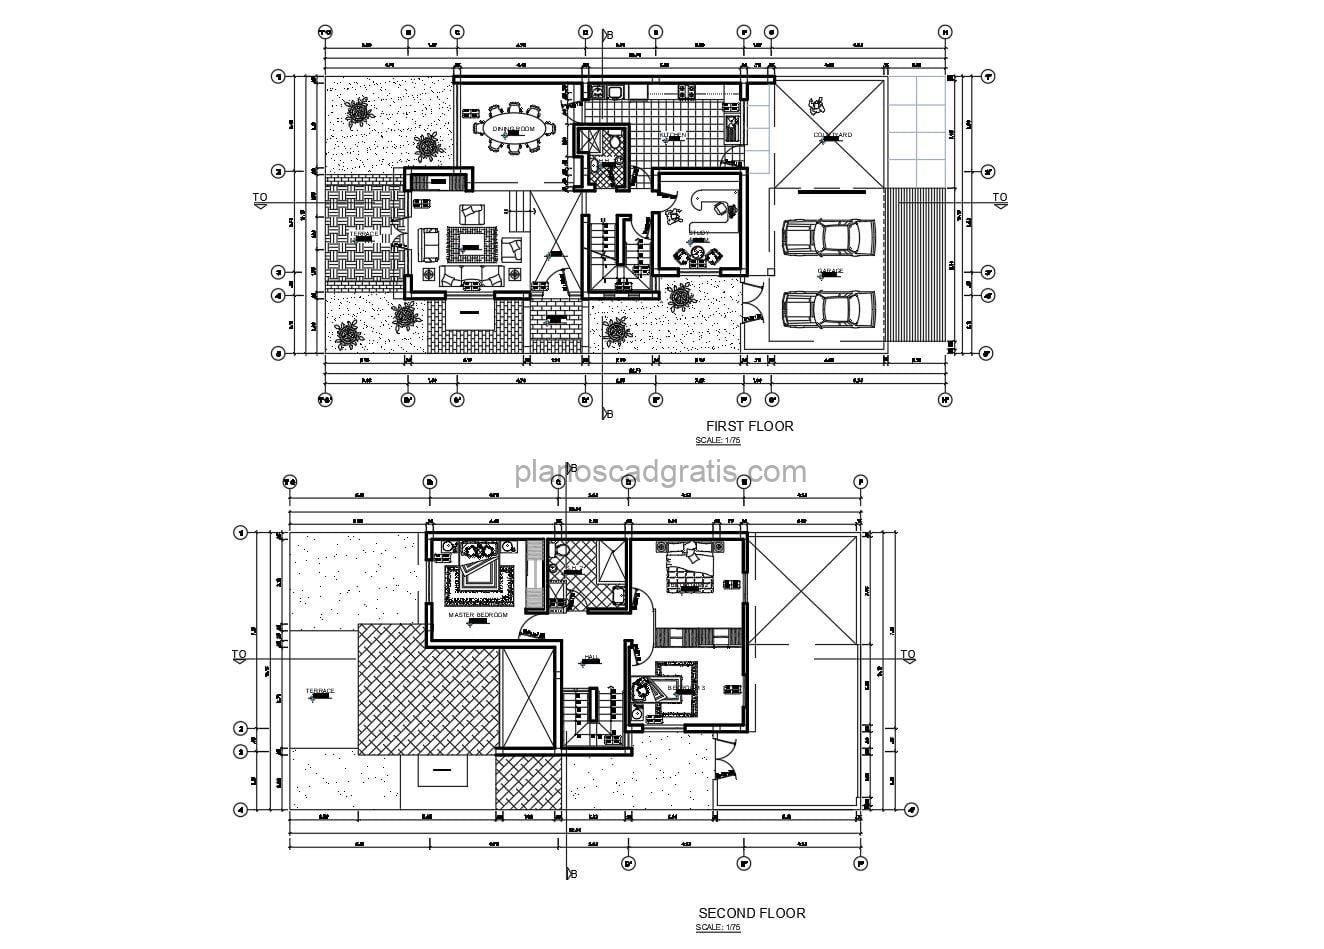 planos con medidas y planos de residencia de dos niveles con tres habitaciones, marquesina doble y sala posterior, planos con detalles y bloques de autocad para descarga gratis